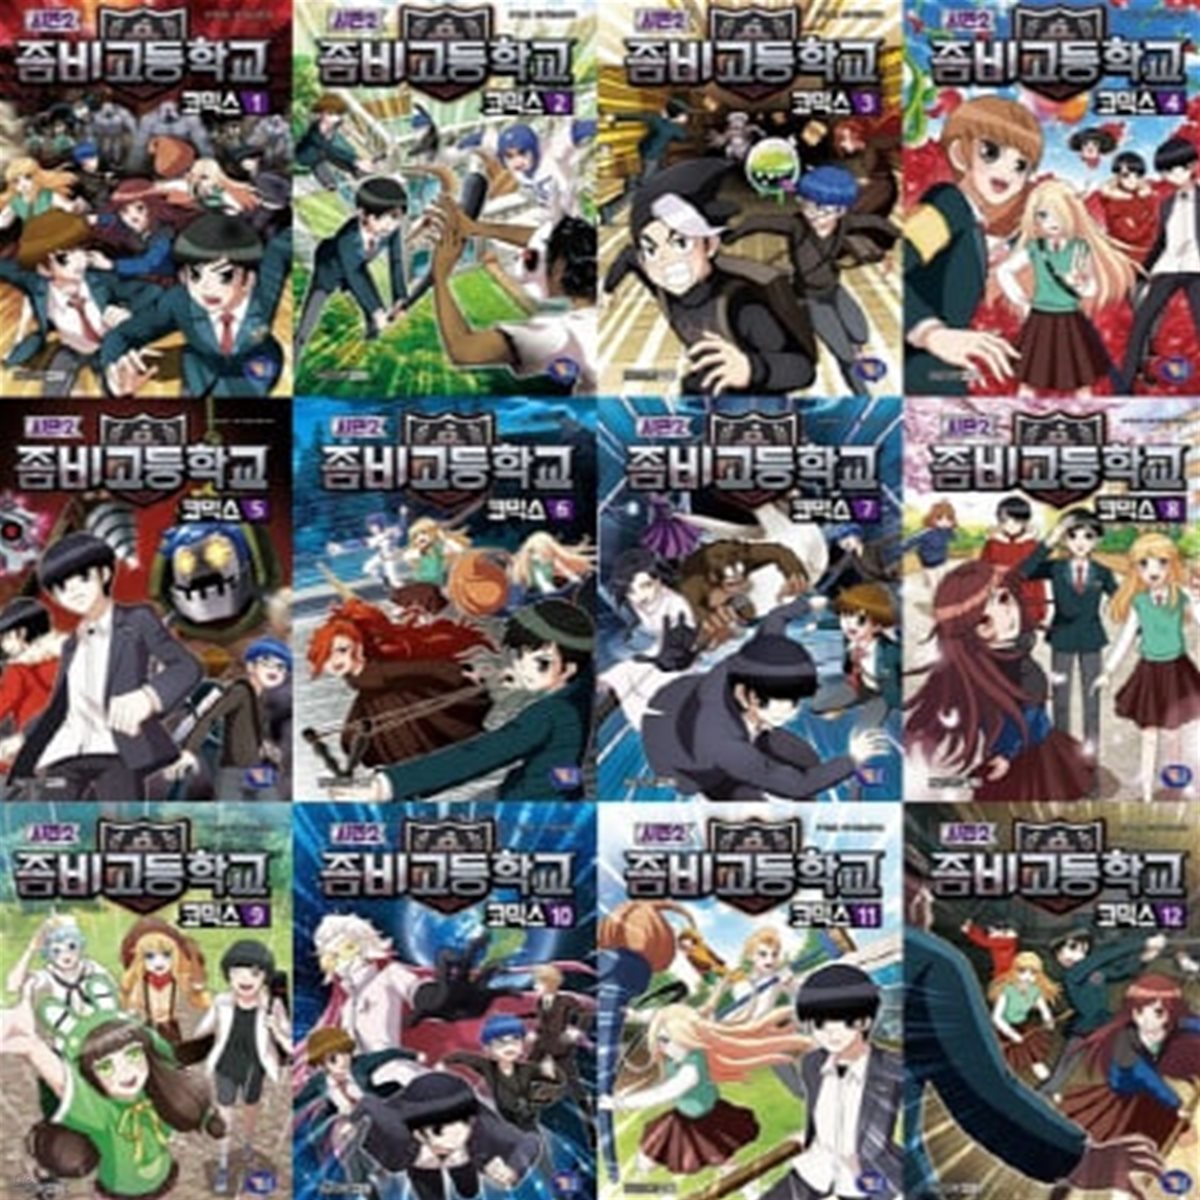 좀비고등학교 코믹스 시즌2_1-12번 시리즈 (전12권)